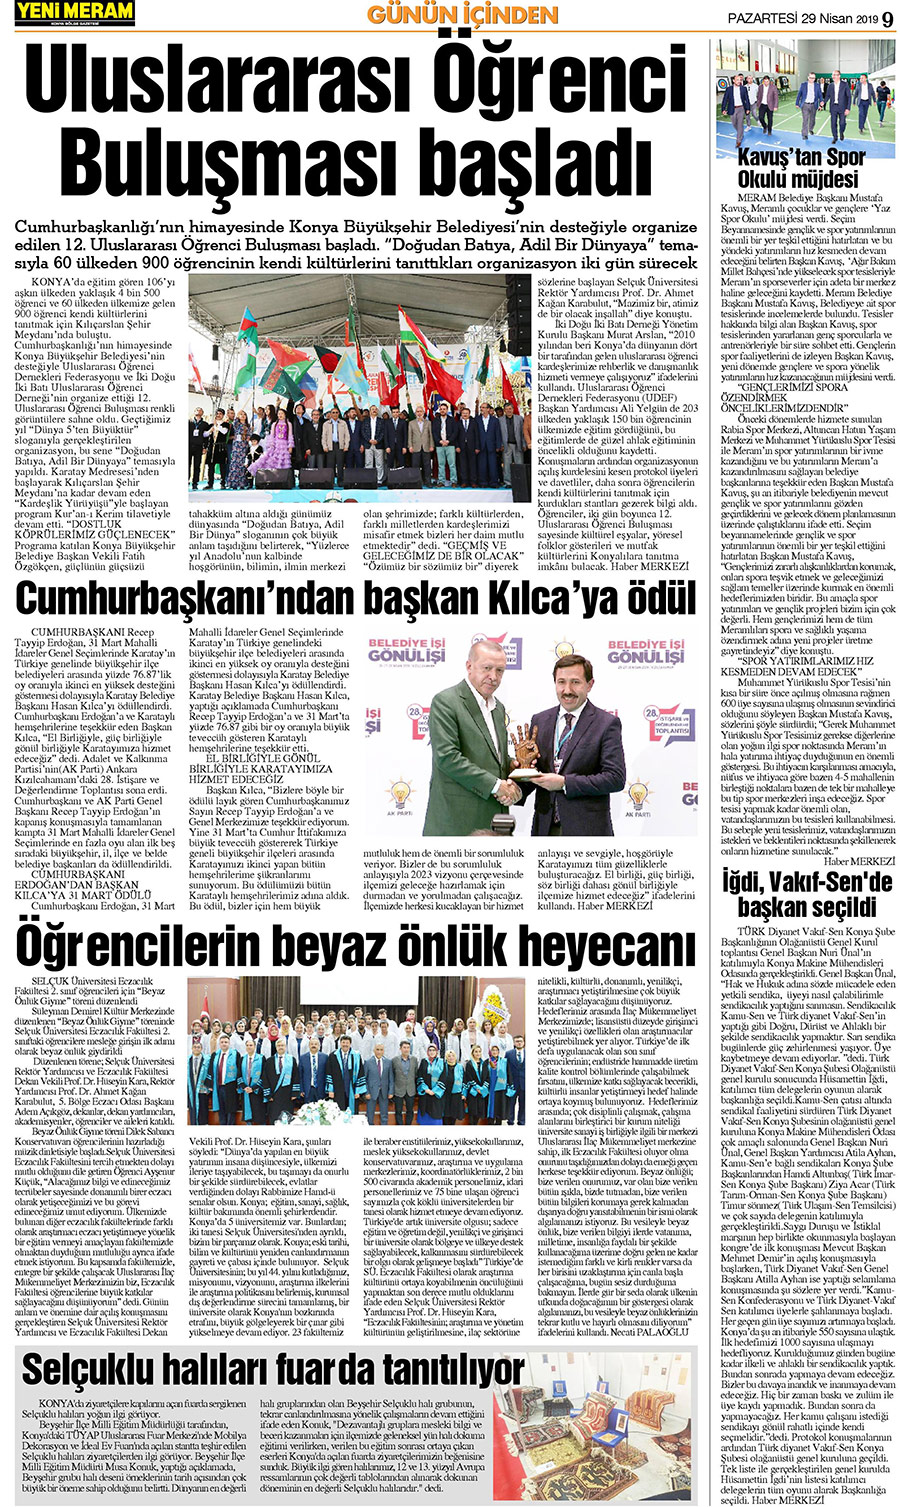 29 Nisan 2019 Yeni Meram Gazetesi